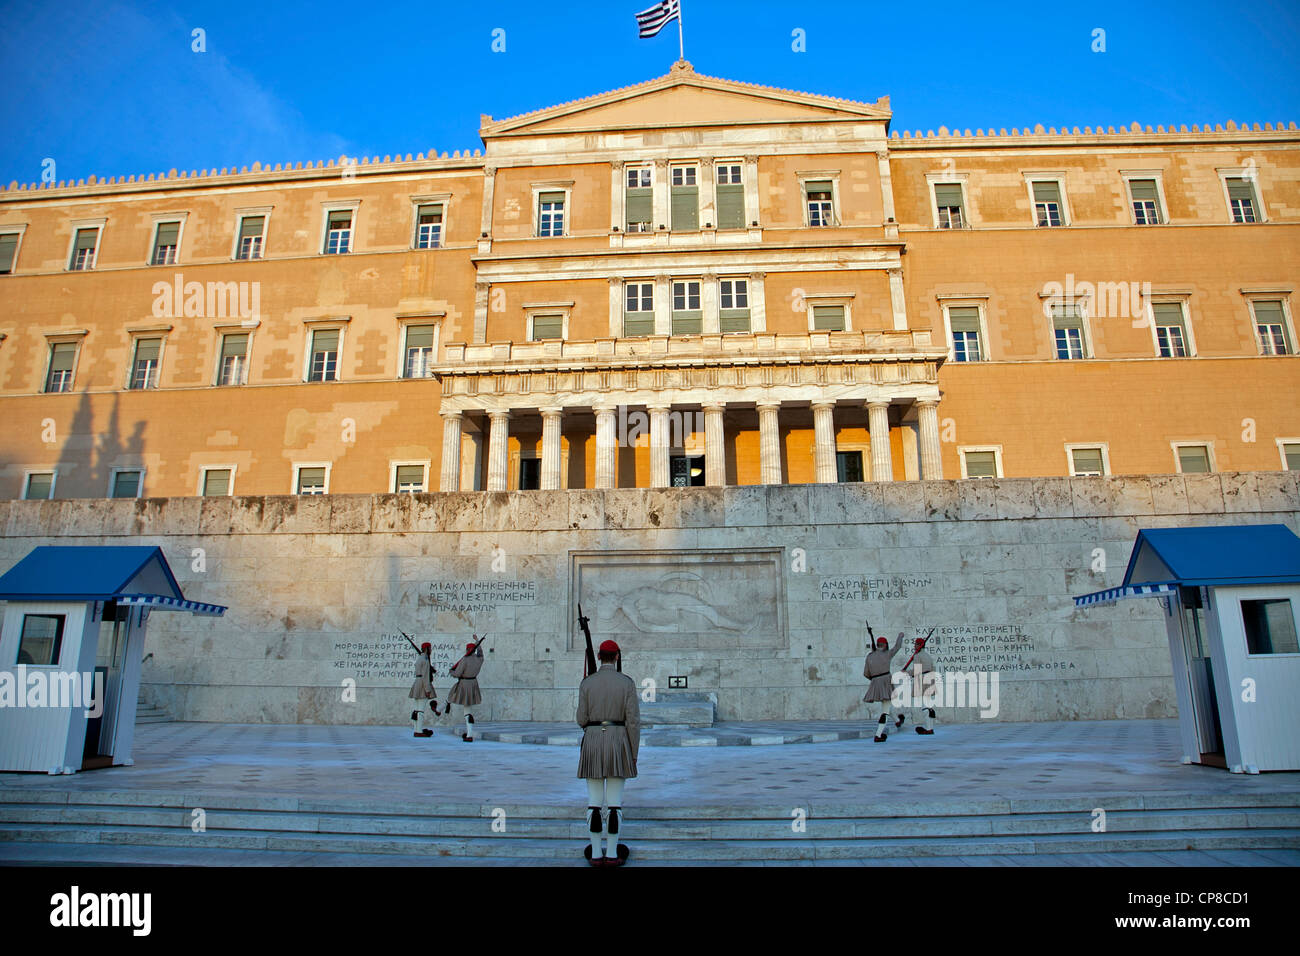 Soldats evzone, relève de la garde, la Place Syntagma, Athènes, Grèce, Europe Banque D'Images